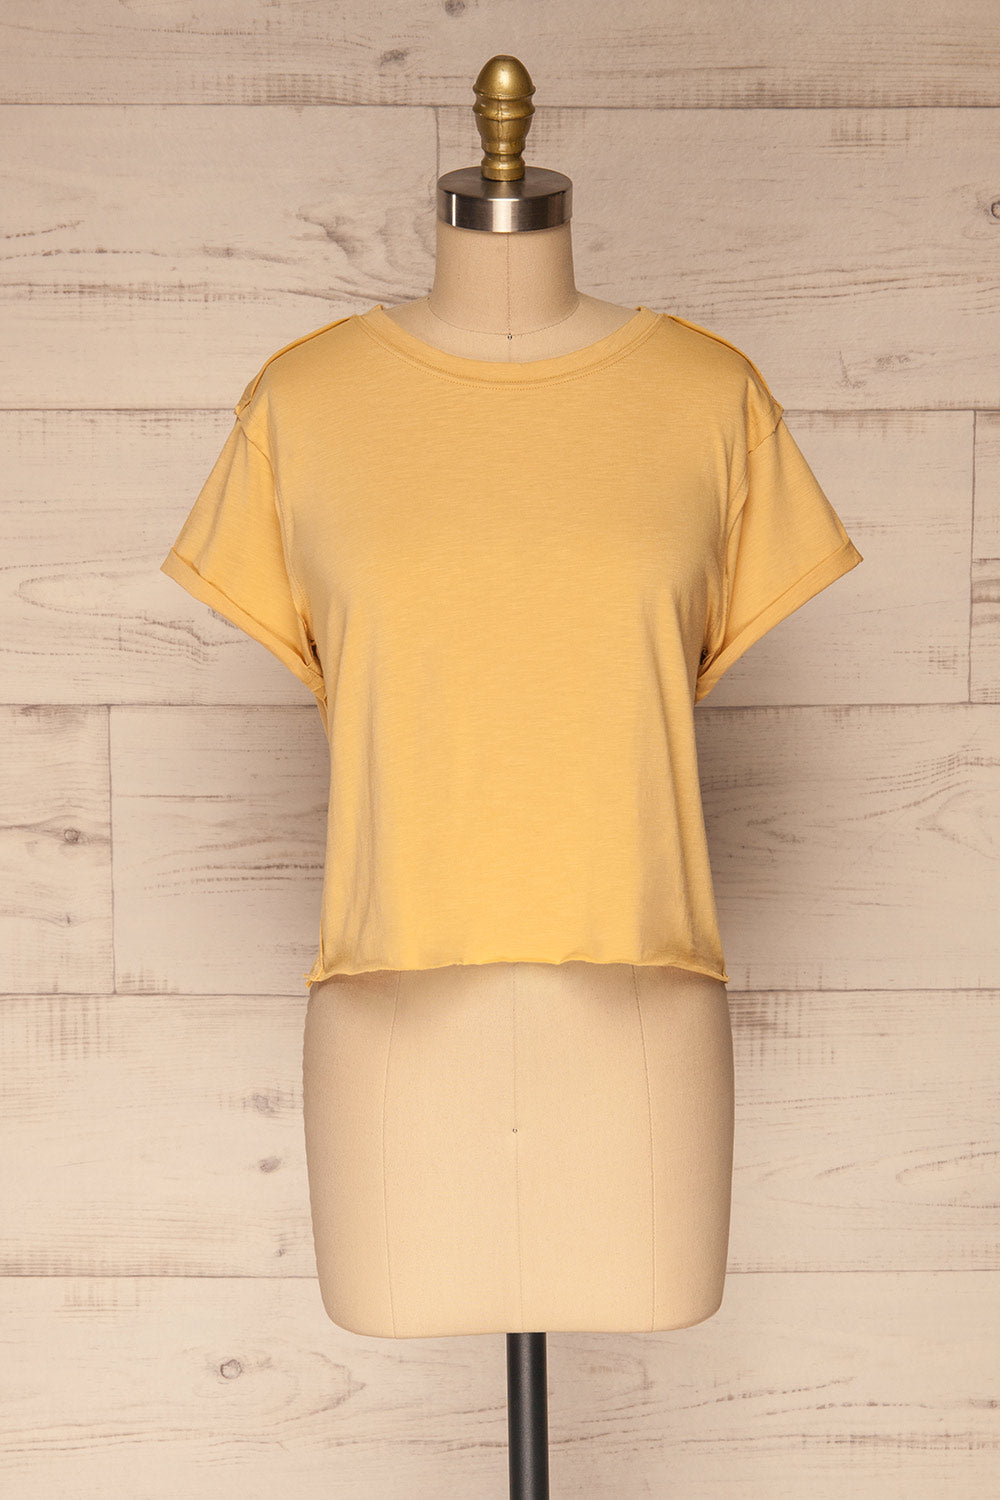 Quarreni Light Yellow Crop T-Shirt | La petite garçonne front view 